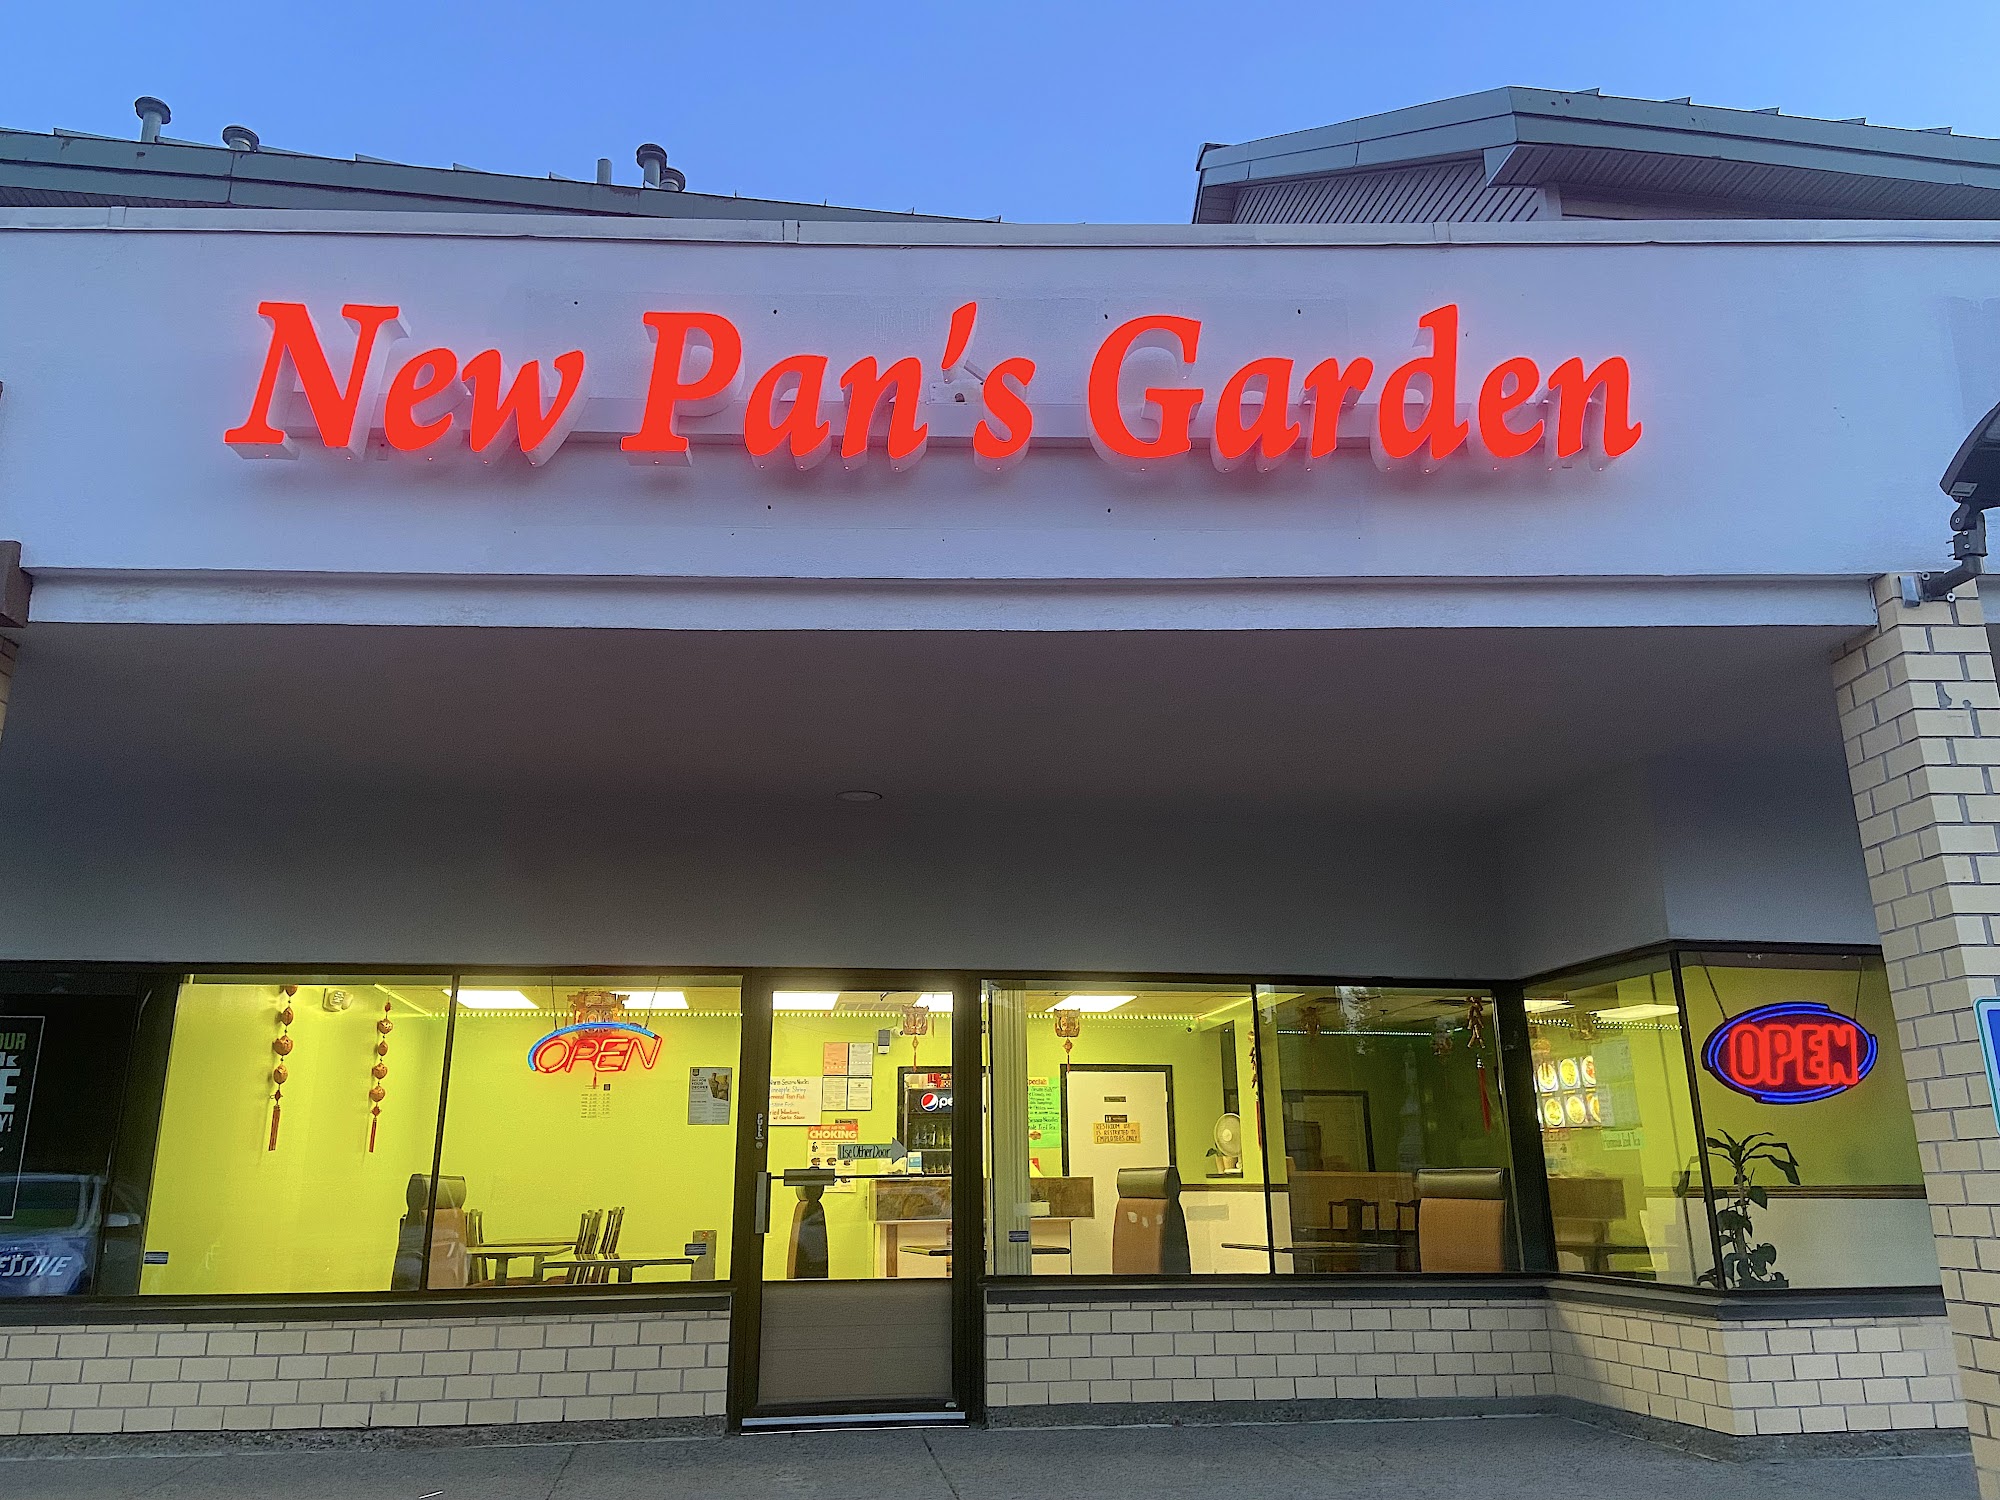 New Pan's Garden